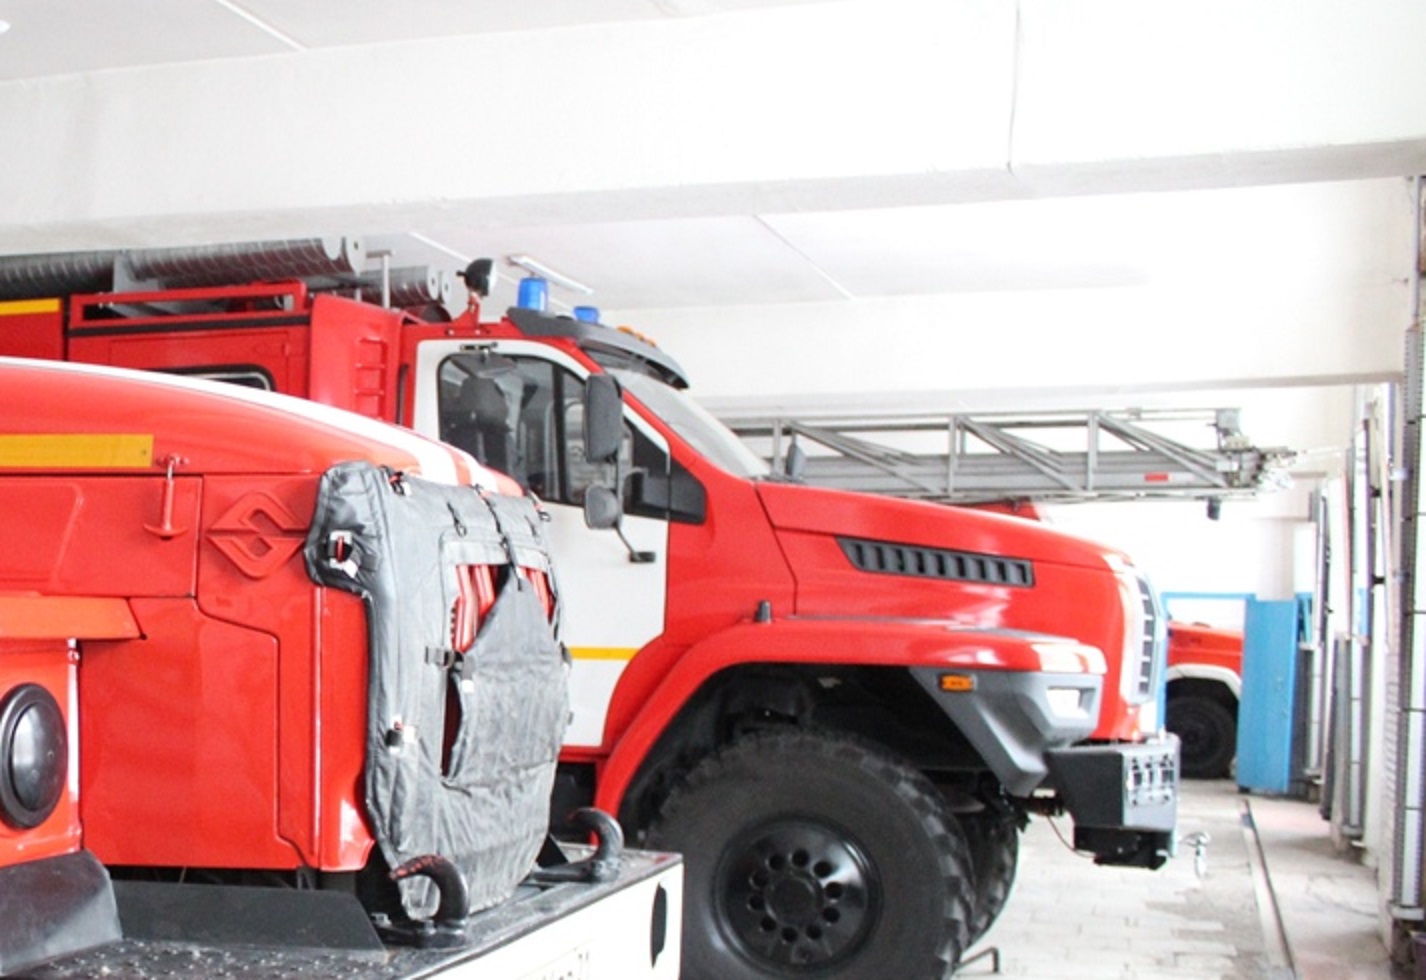 Водителя пожарной машины нашли в гараже без признаков жизни в Балахнинском районе